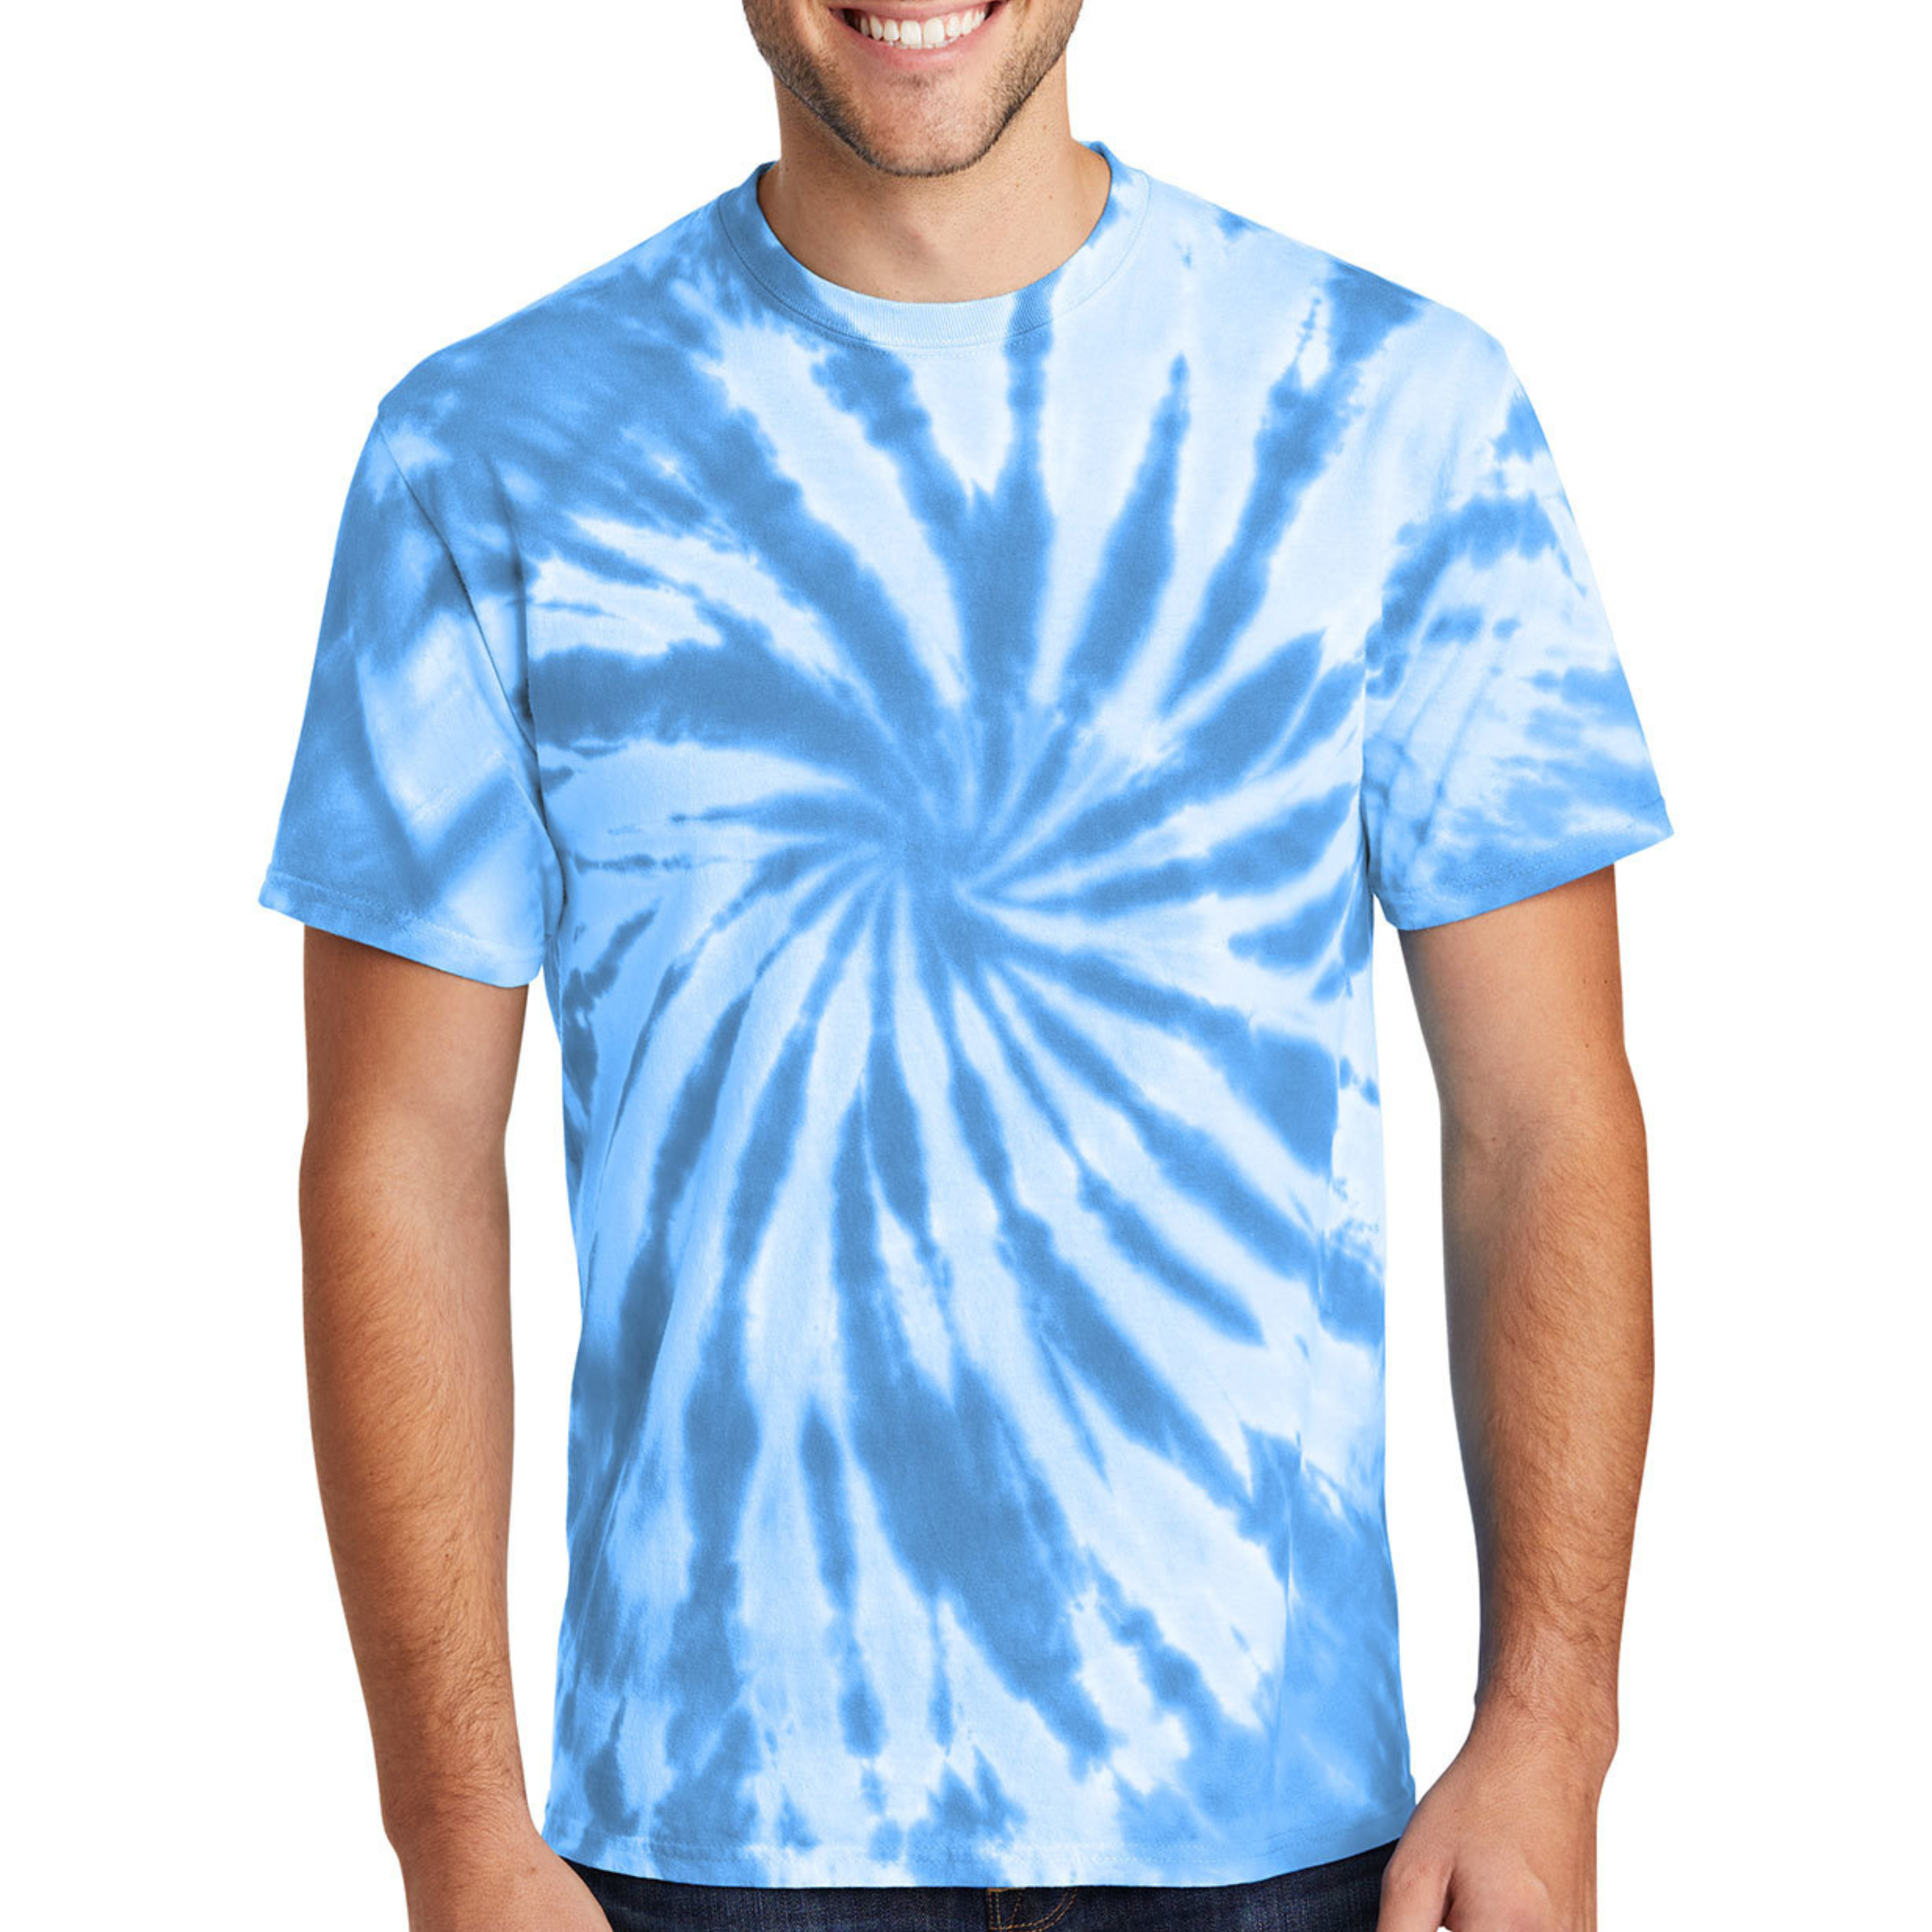 Unisex Tie-Dye T-shirt